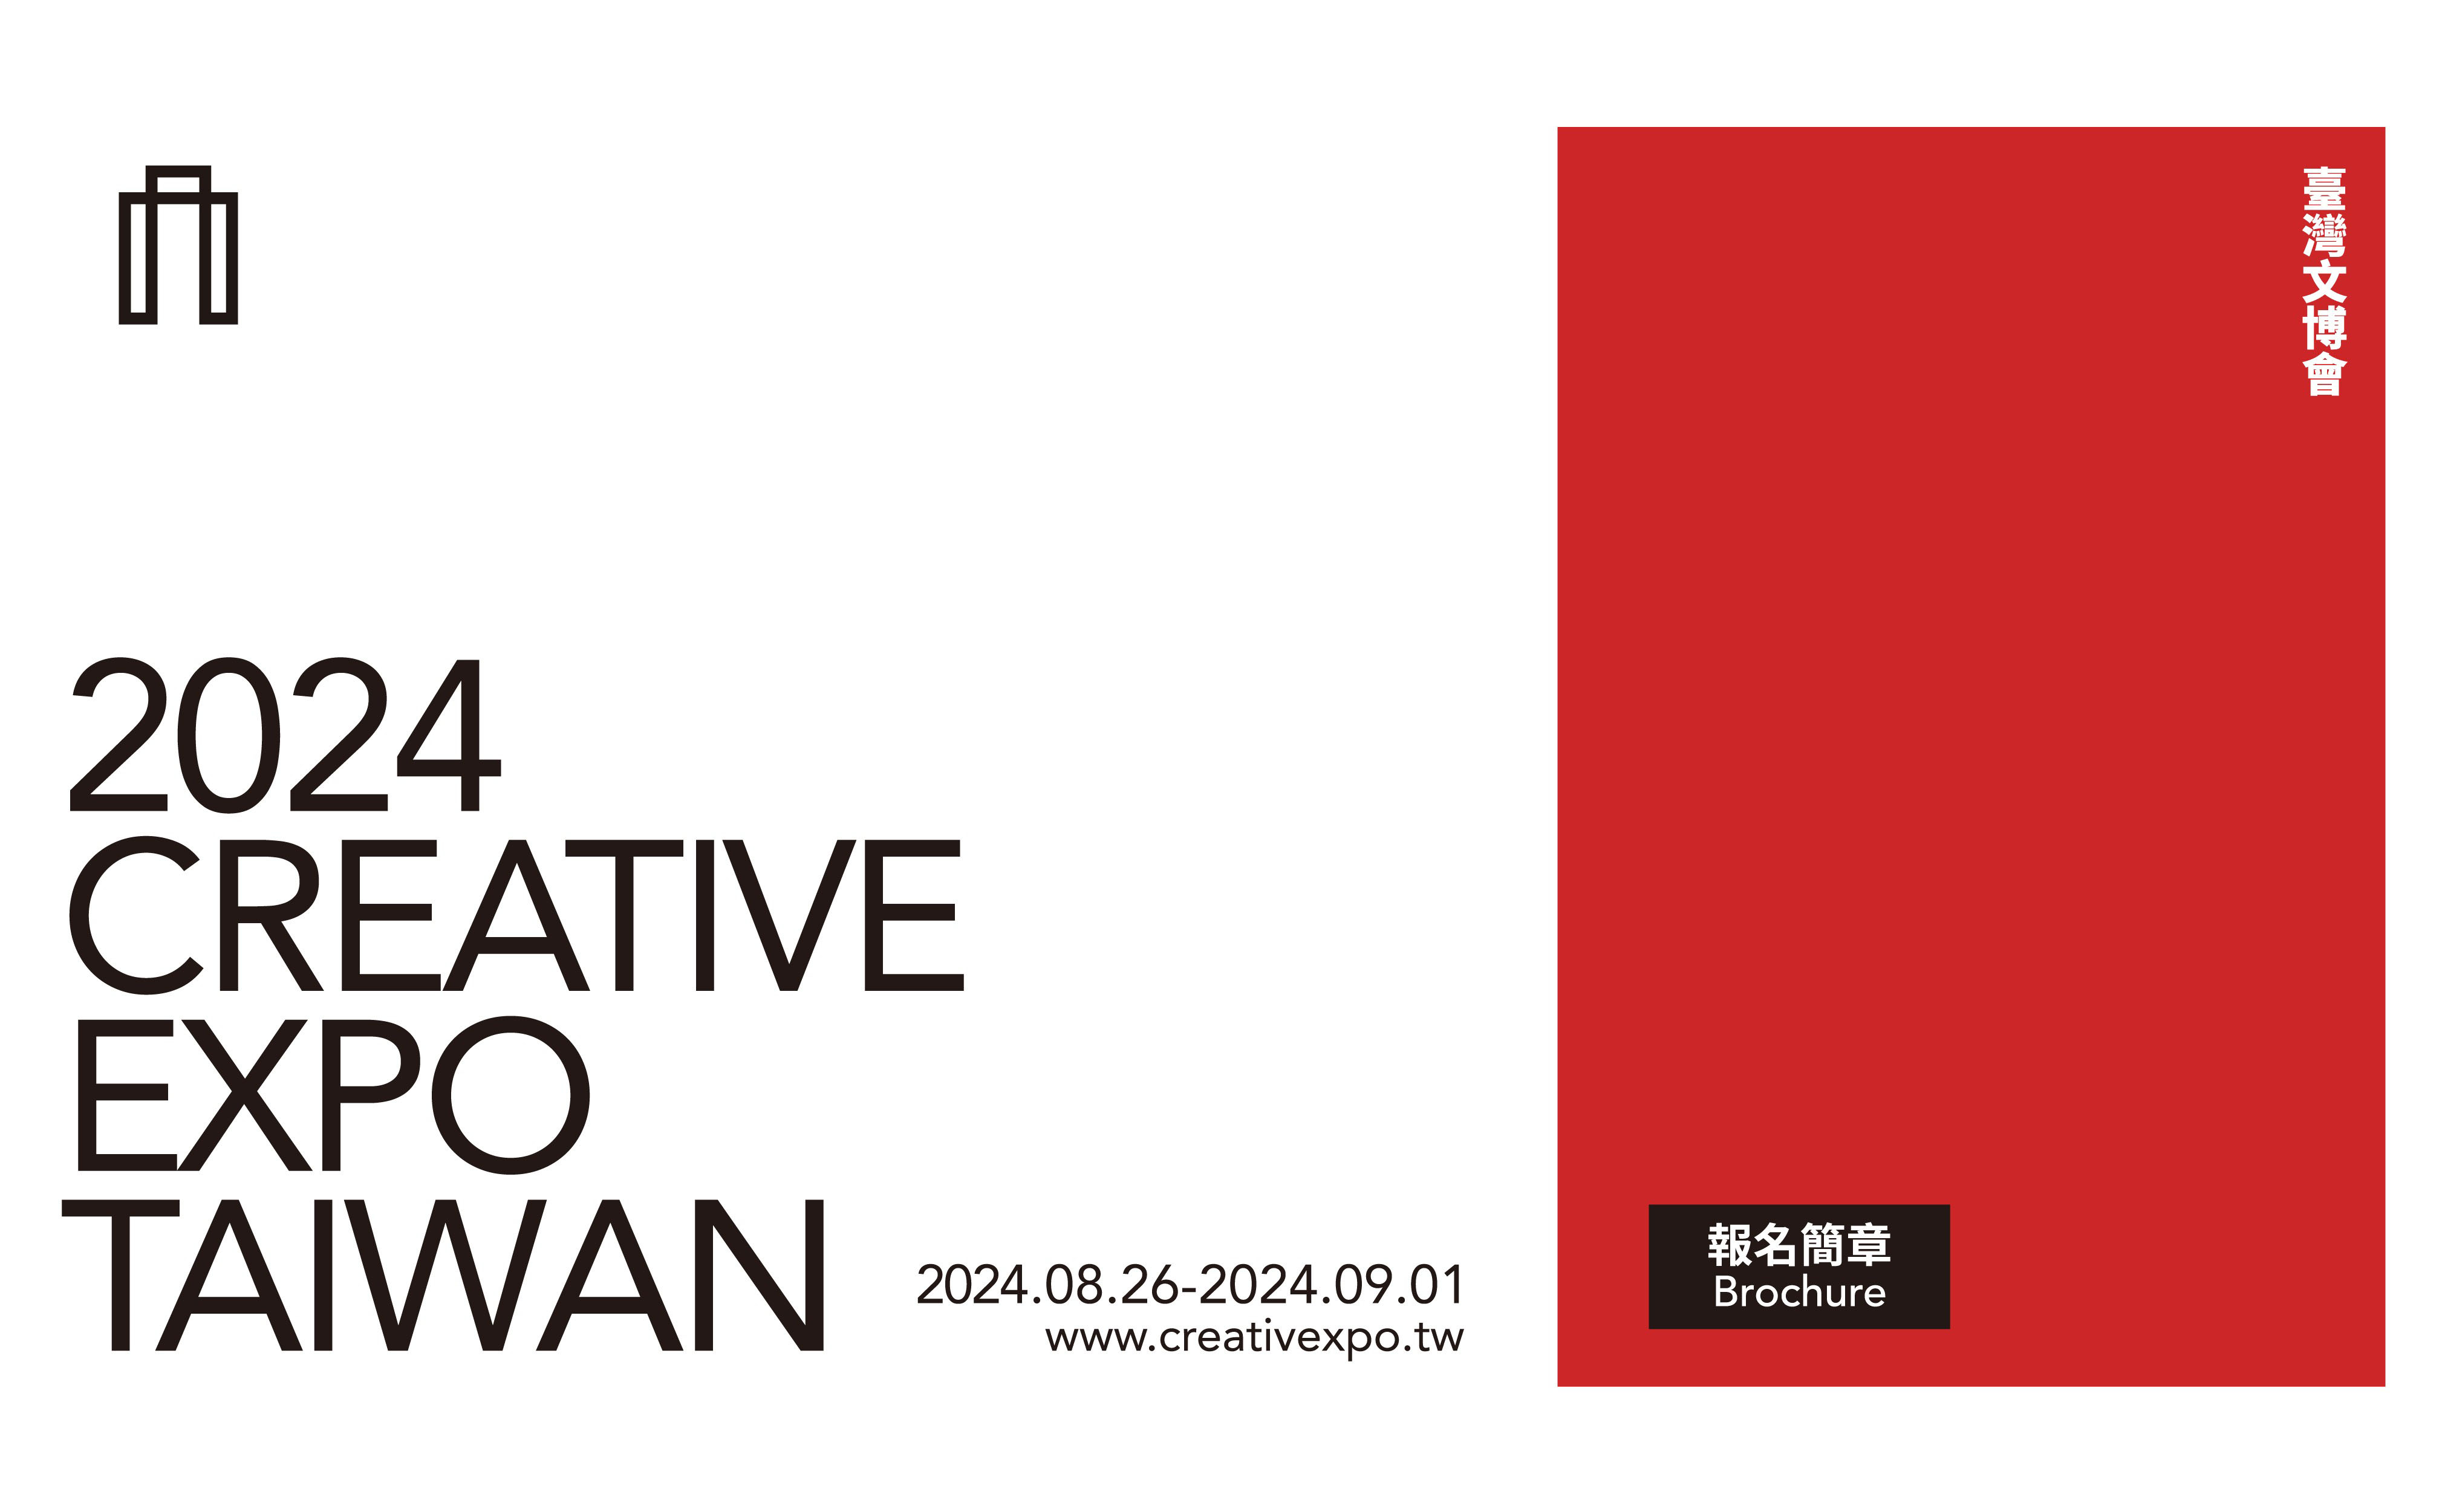 臺灣文化創意博覽會